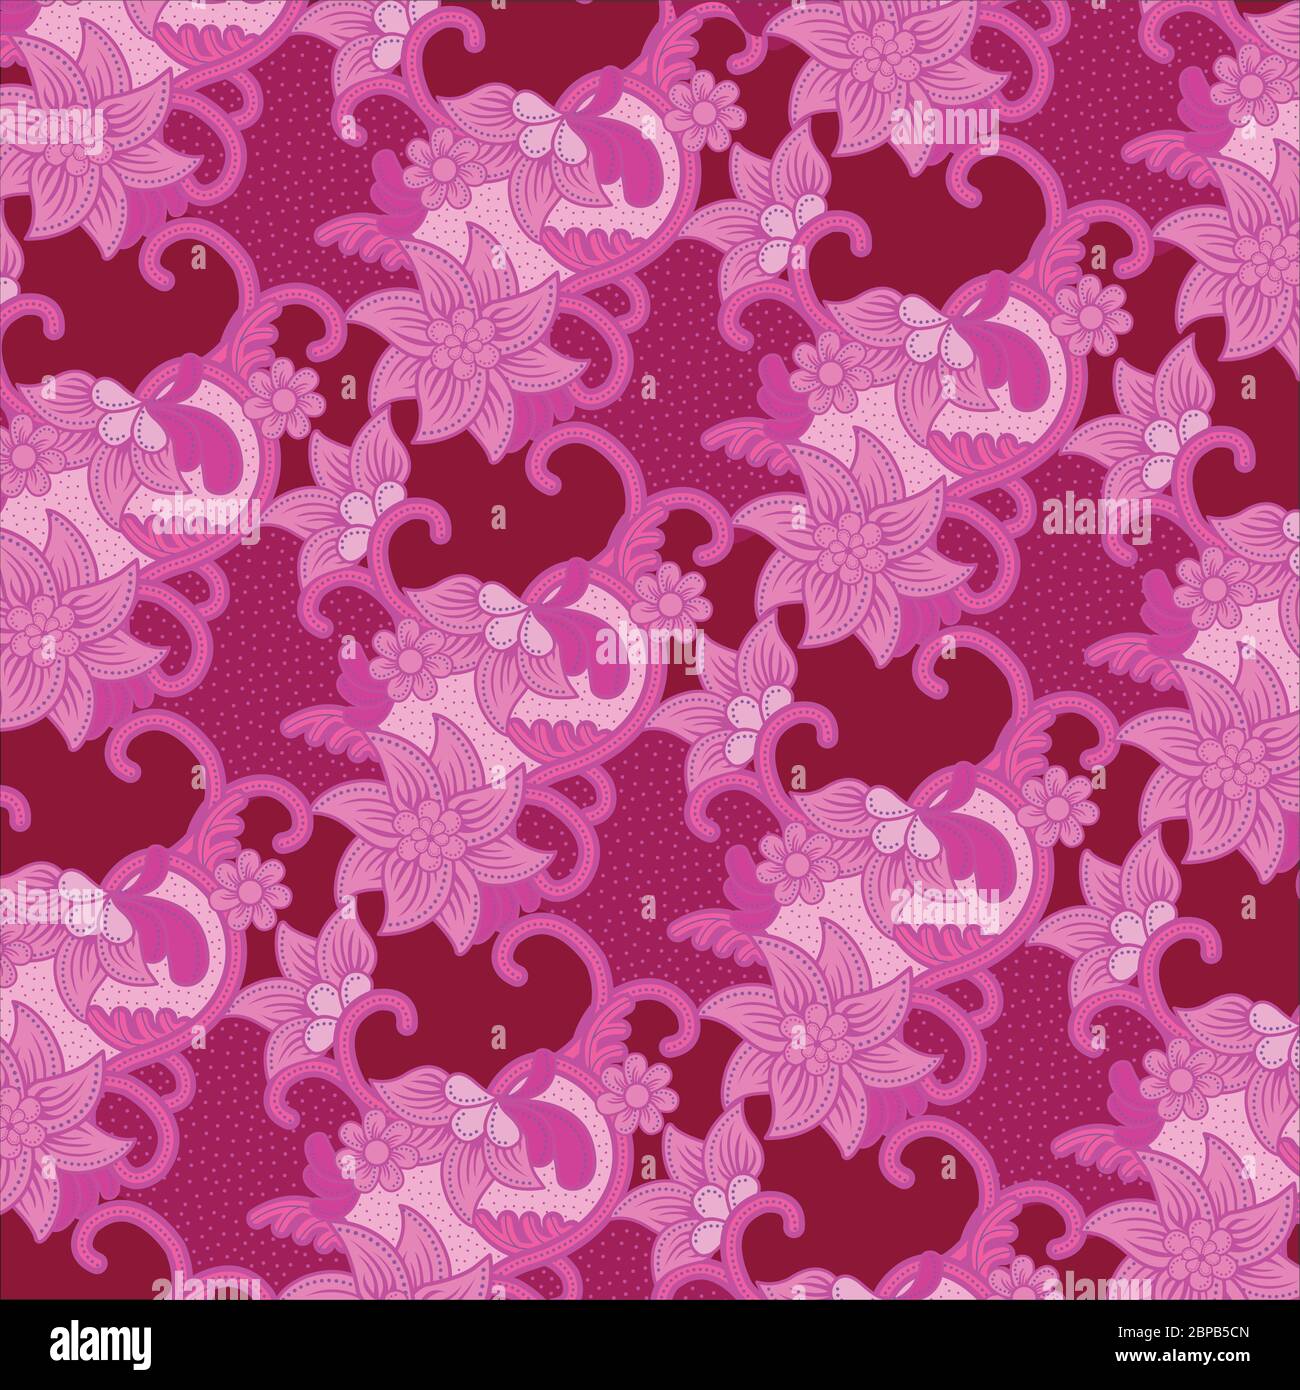 Disegno batik con motivo floreale tradizionale con punti e linee ricce in tonalità rosa. Batik è una tecnica indonesiana di tintura cerata-resistente. Illustrazione Vettoriale